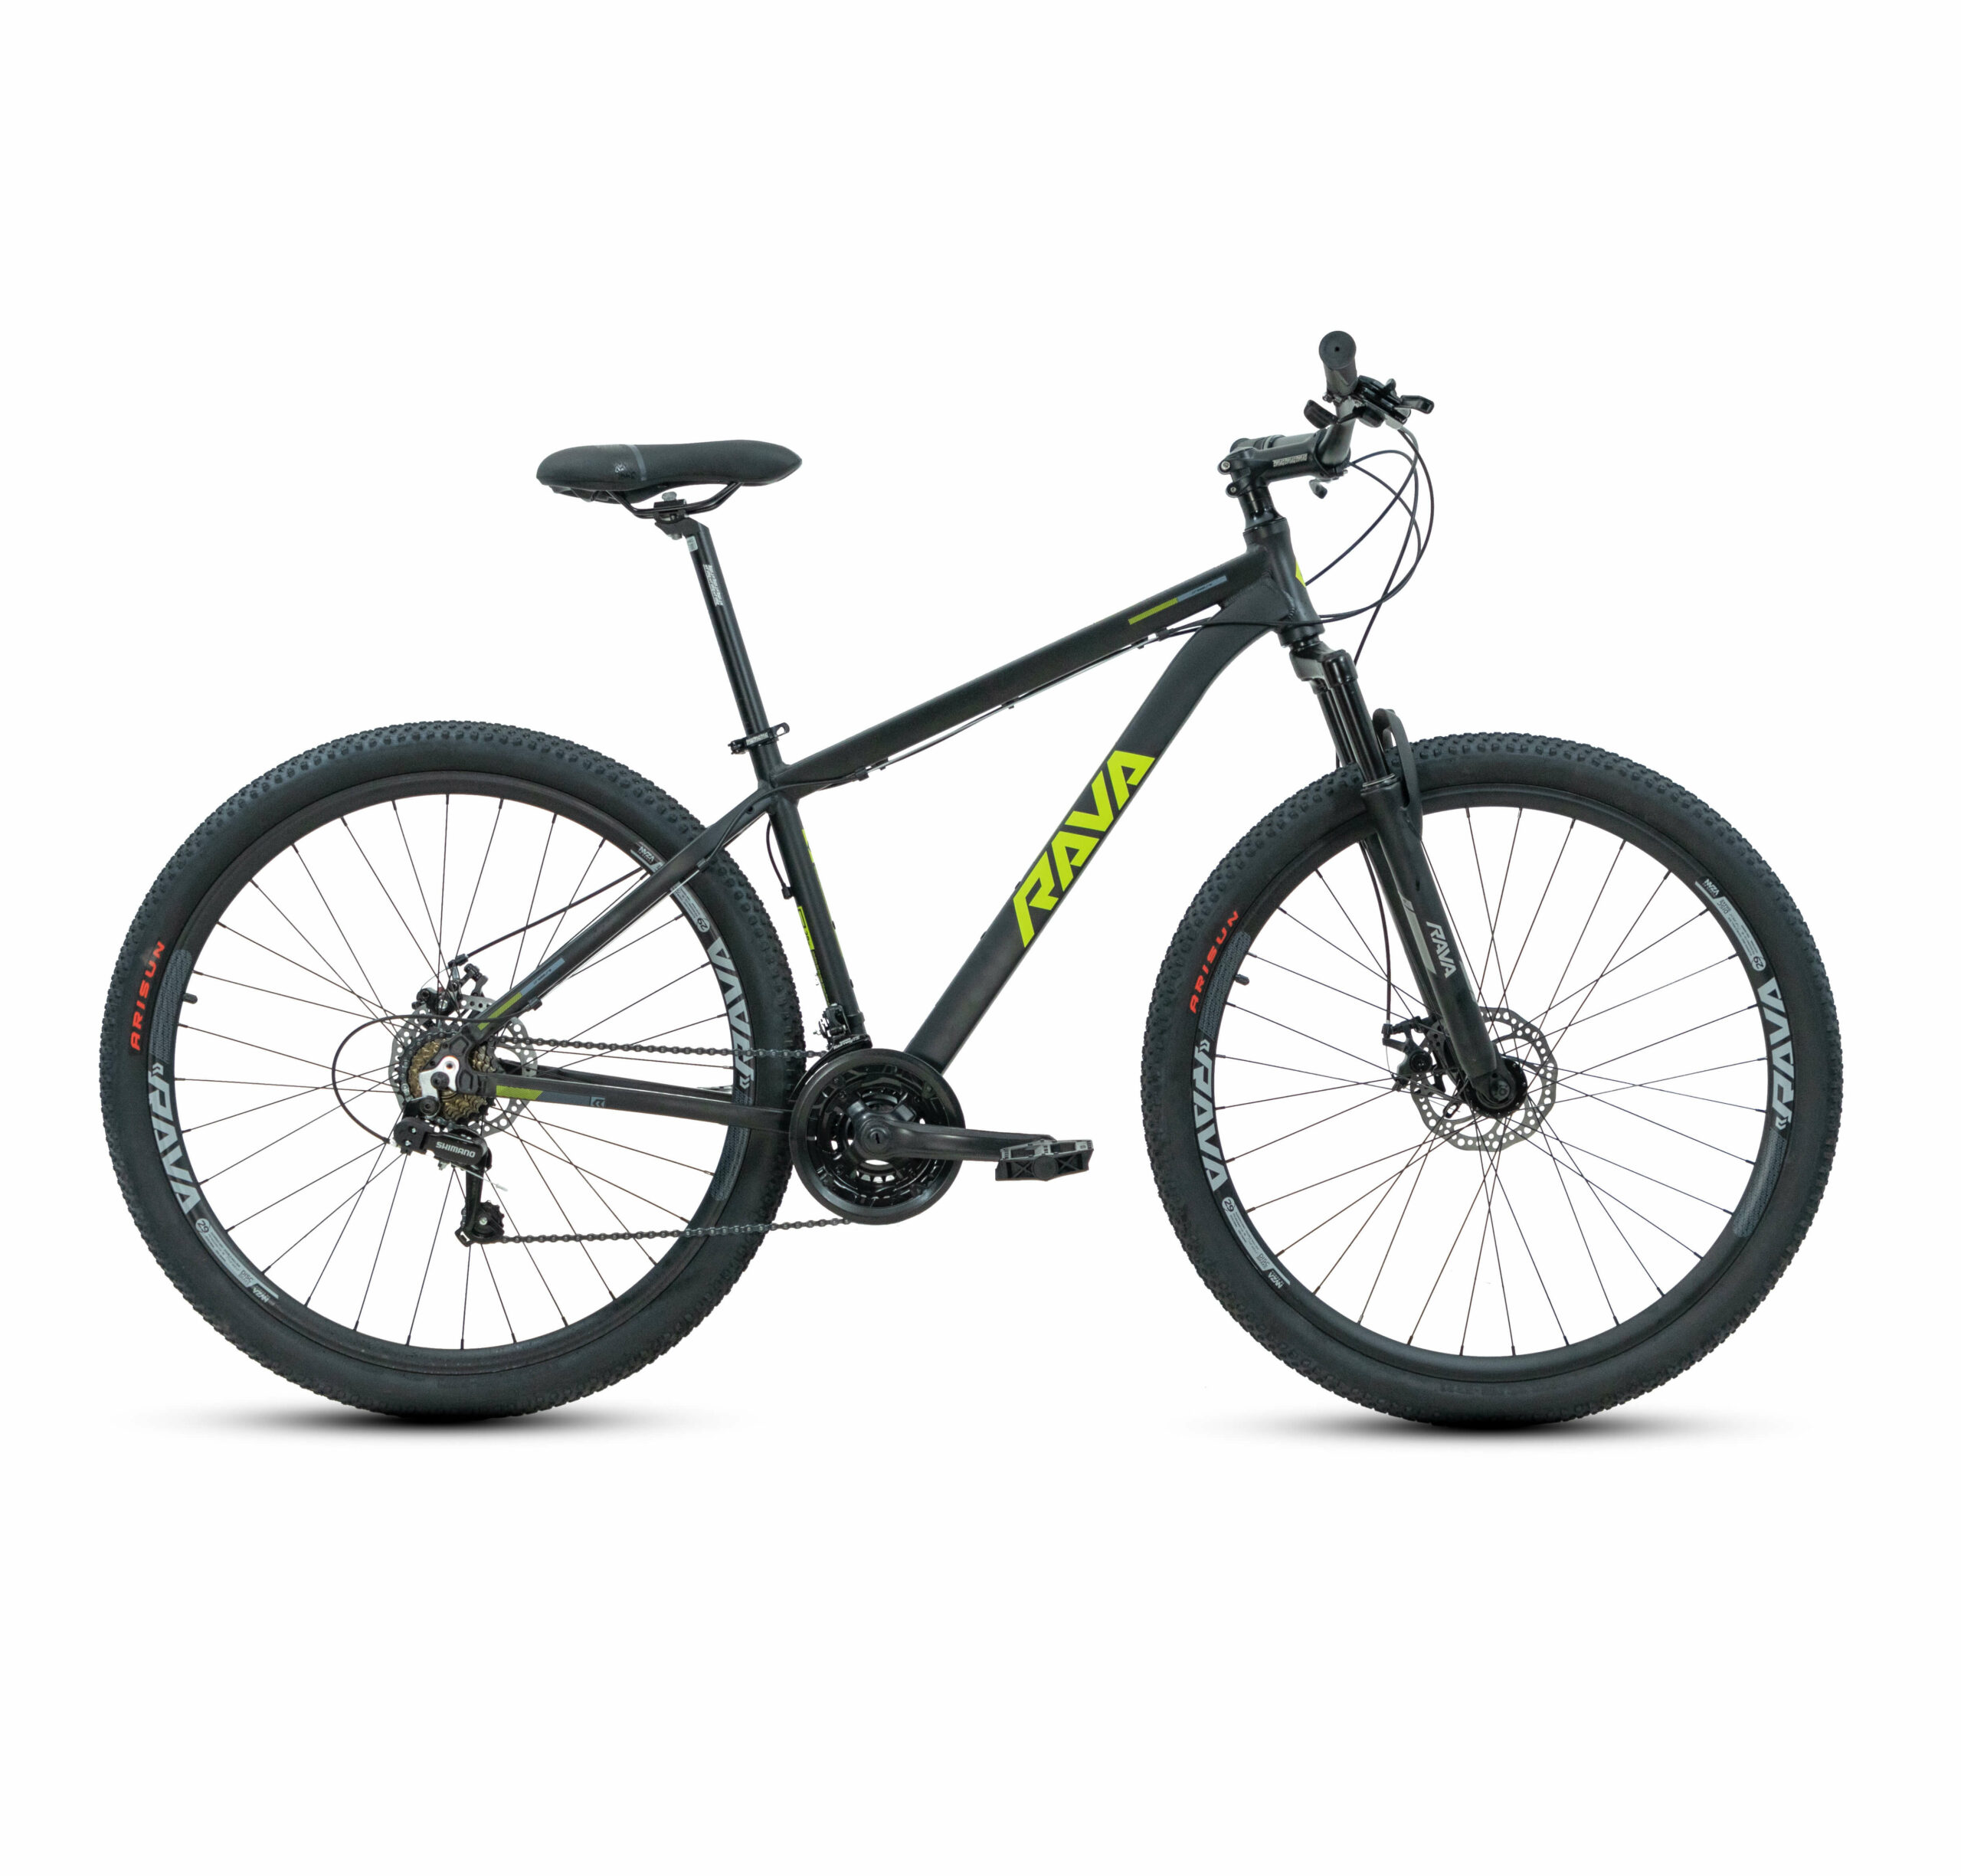 Bicicleta Pressure 29 Rava | 2021 | Edição 21v. Mecânico - Preto/Verde, 15.5"